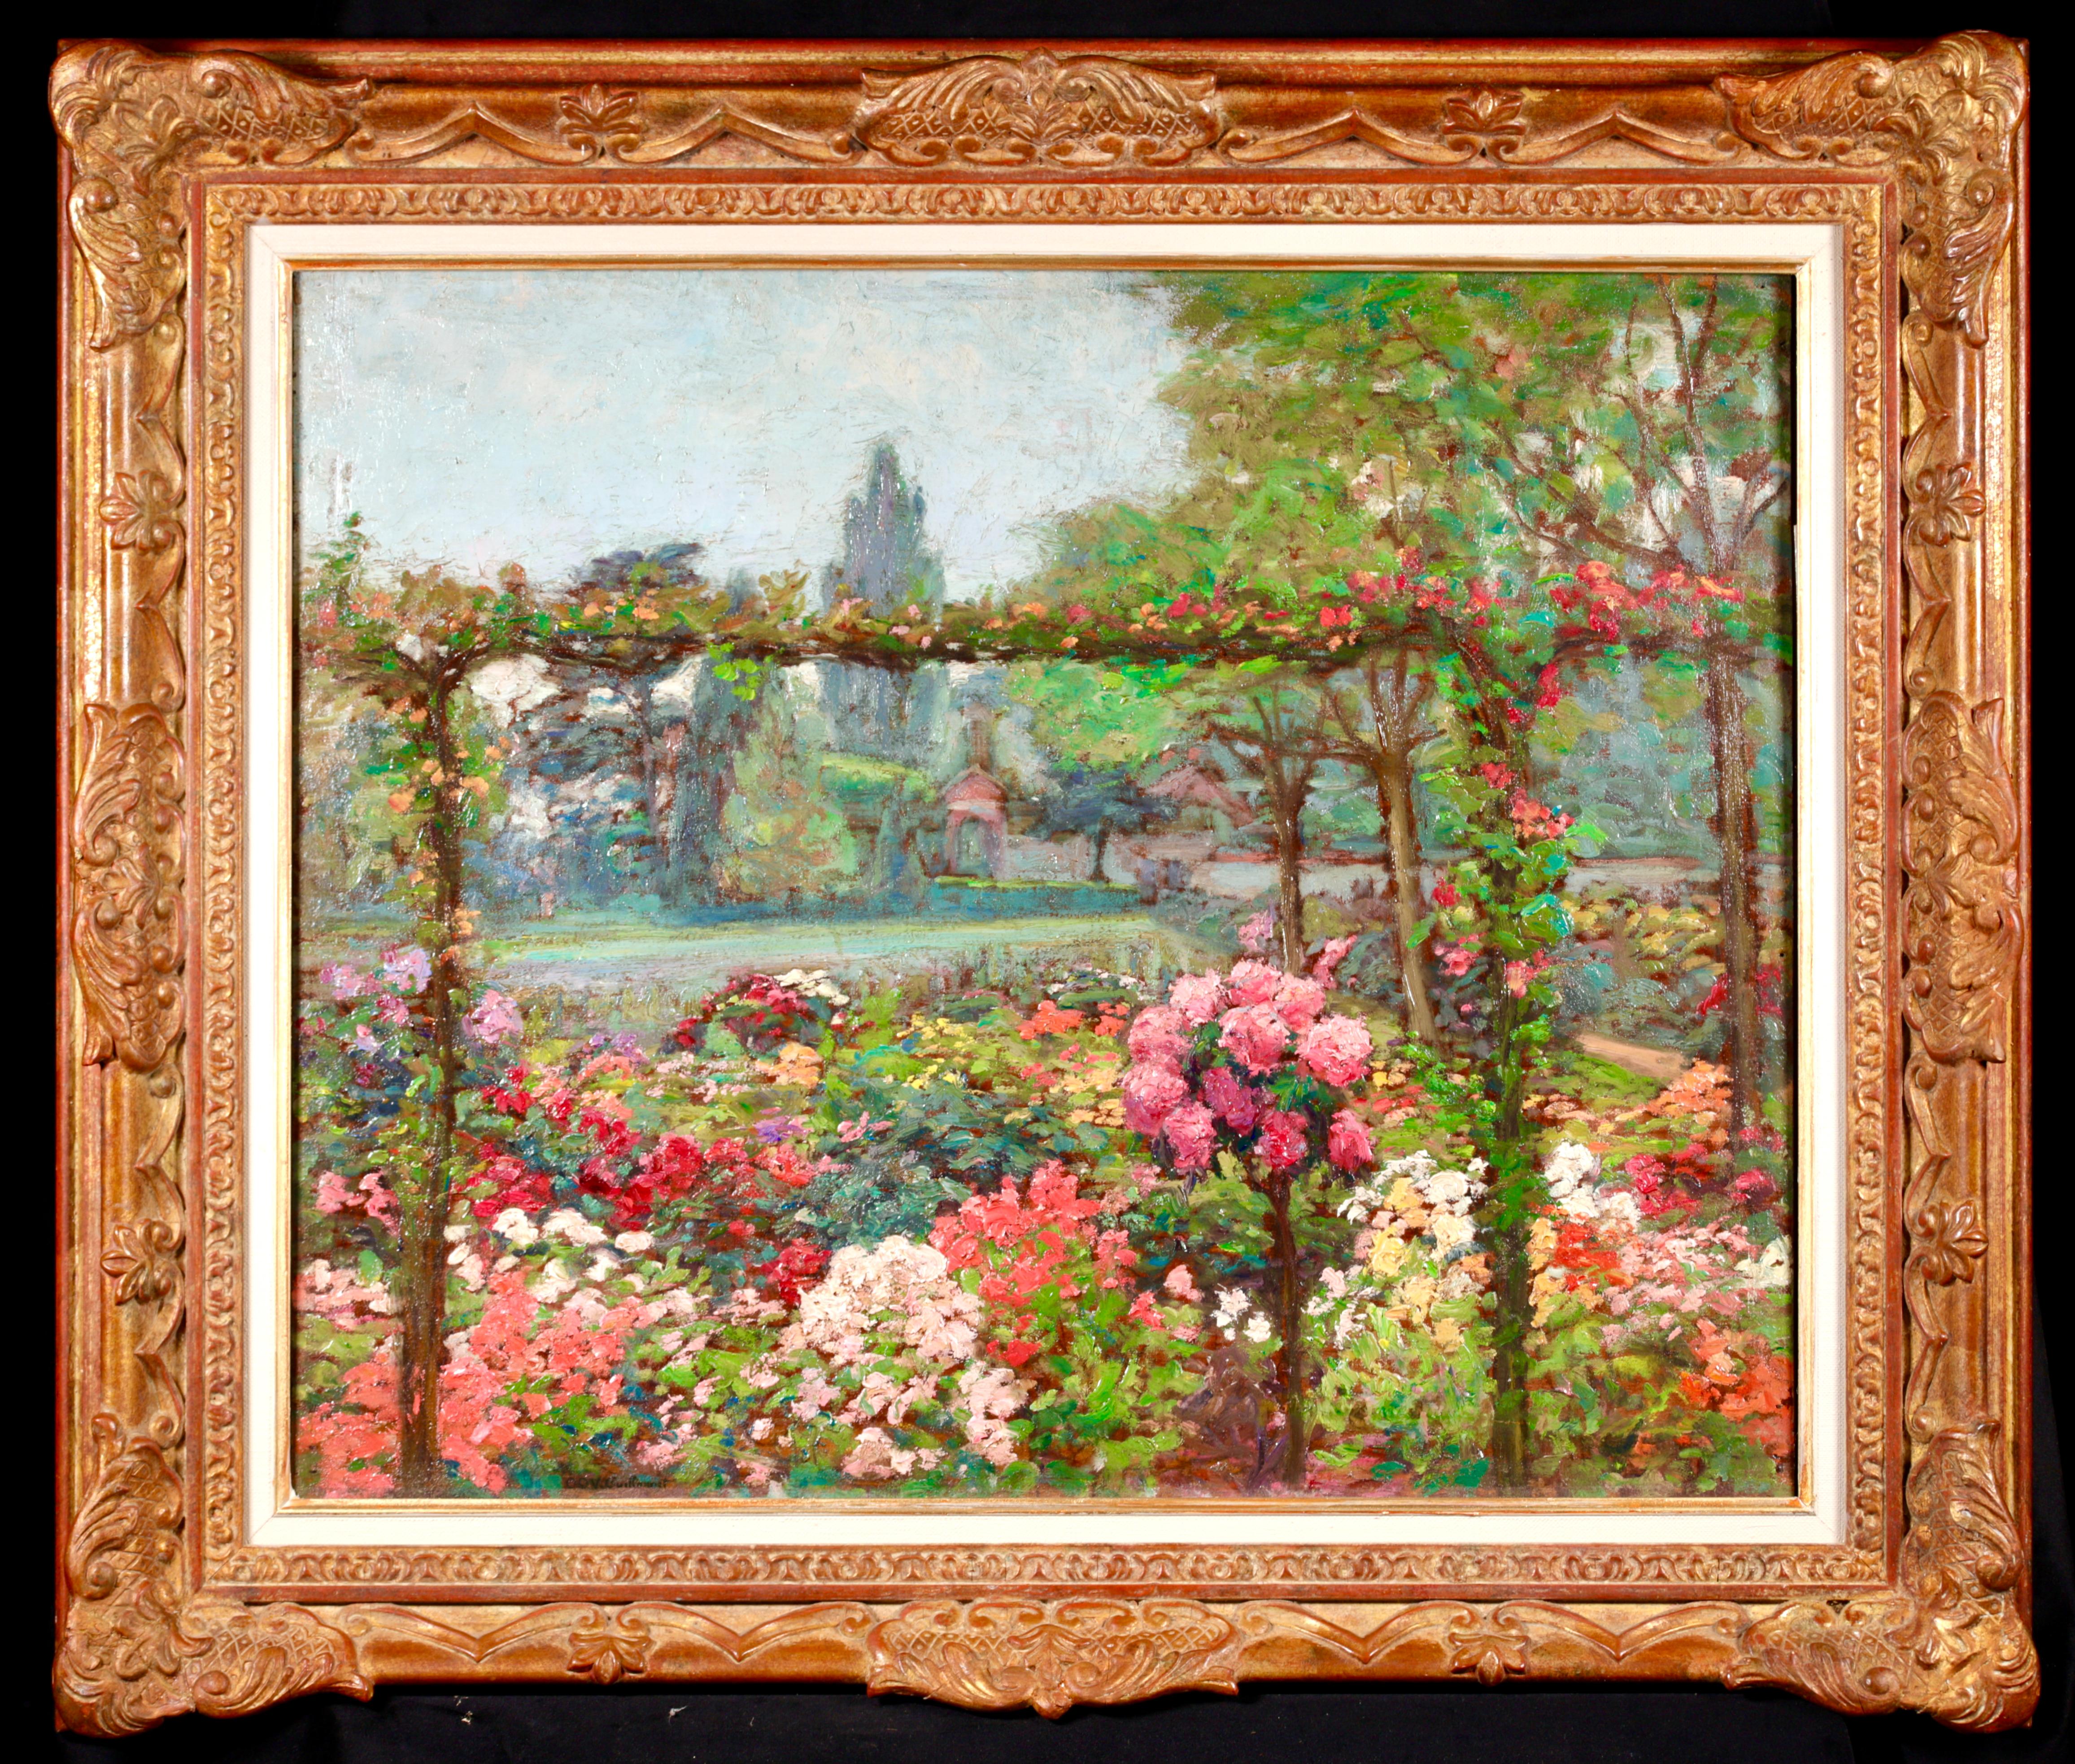 Superbe huile post impressionniste signée sur panneau vers 1920 par le peintre français Emile Octave Denis Victor Guillonnet. L'œuvre représente un jardin d'été rempli de fleurs vibrantes dans les tons rouge, rose, jaune et blanc, avec une pelouse